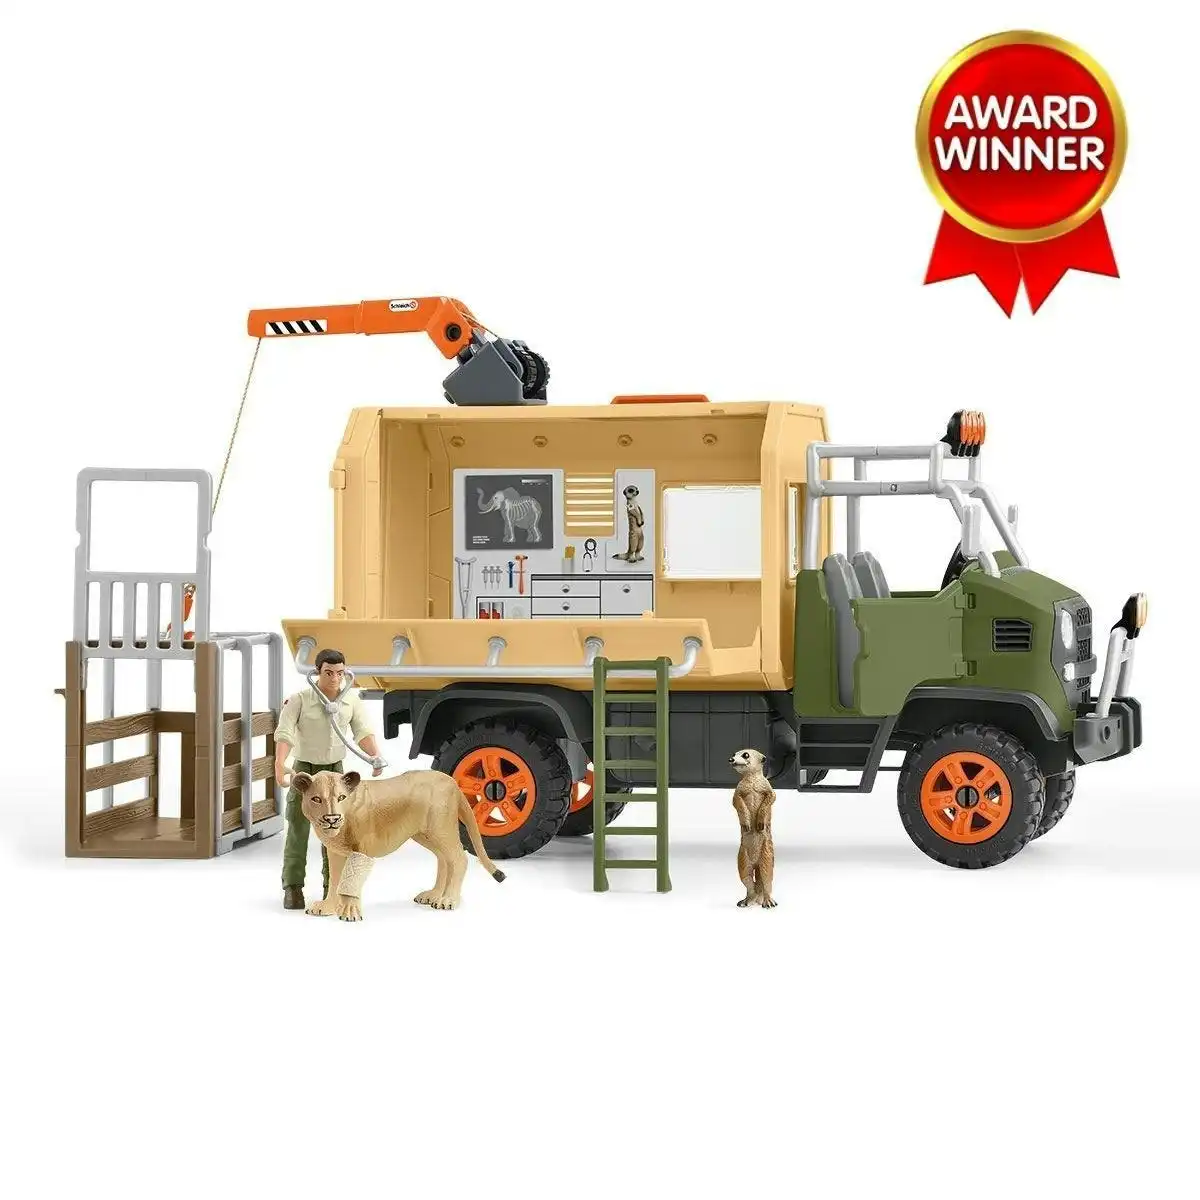 Schleich - Animal Rescue Large Truck   Wildlife Animal Figurine Playset Animal Playset